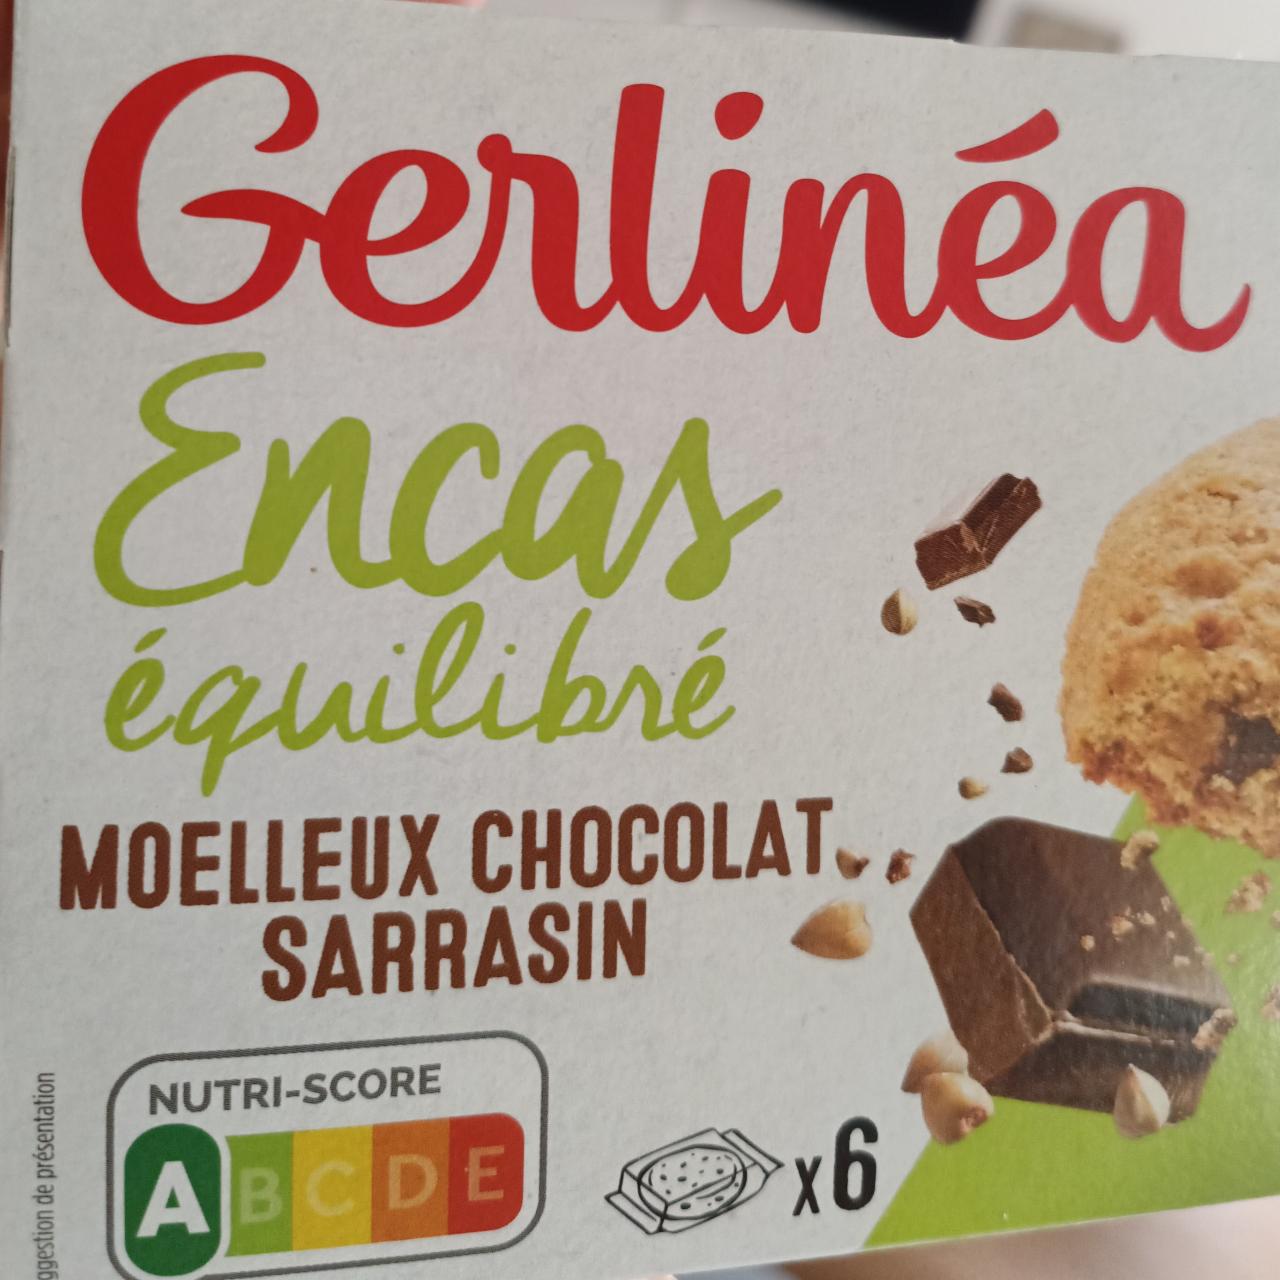 Fotografie - Encas équilibré Moelleux chocolat sarrasin Gerlinéa